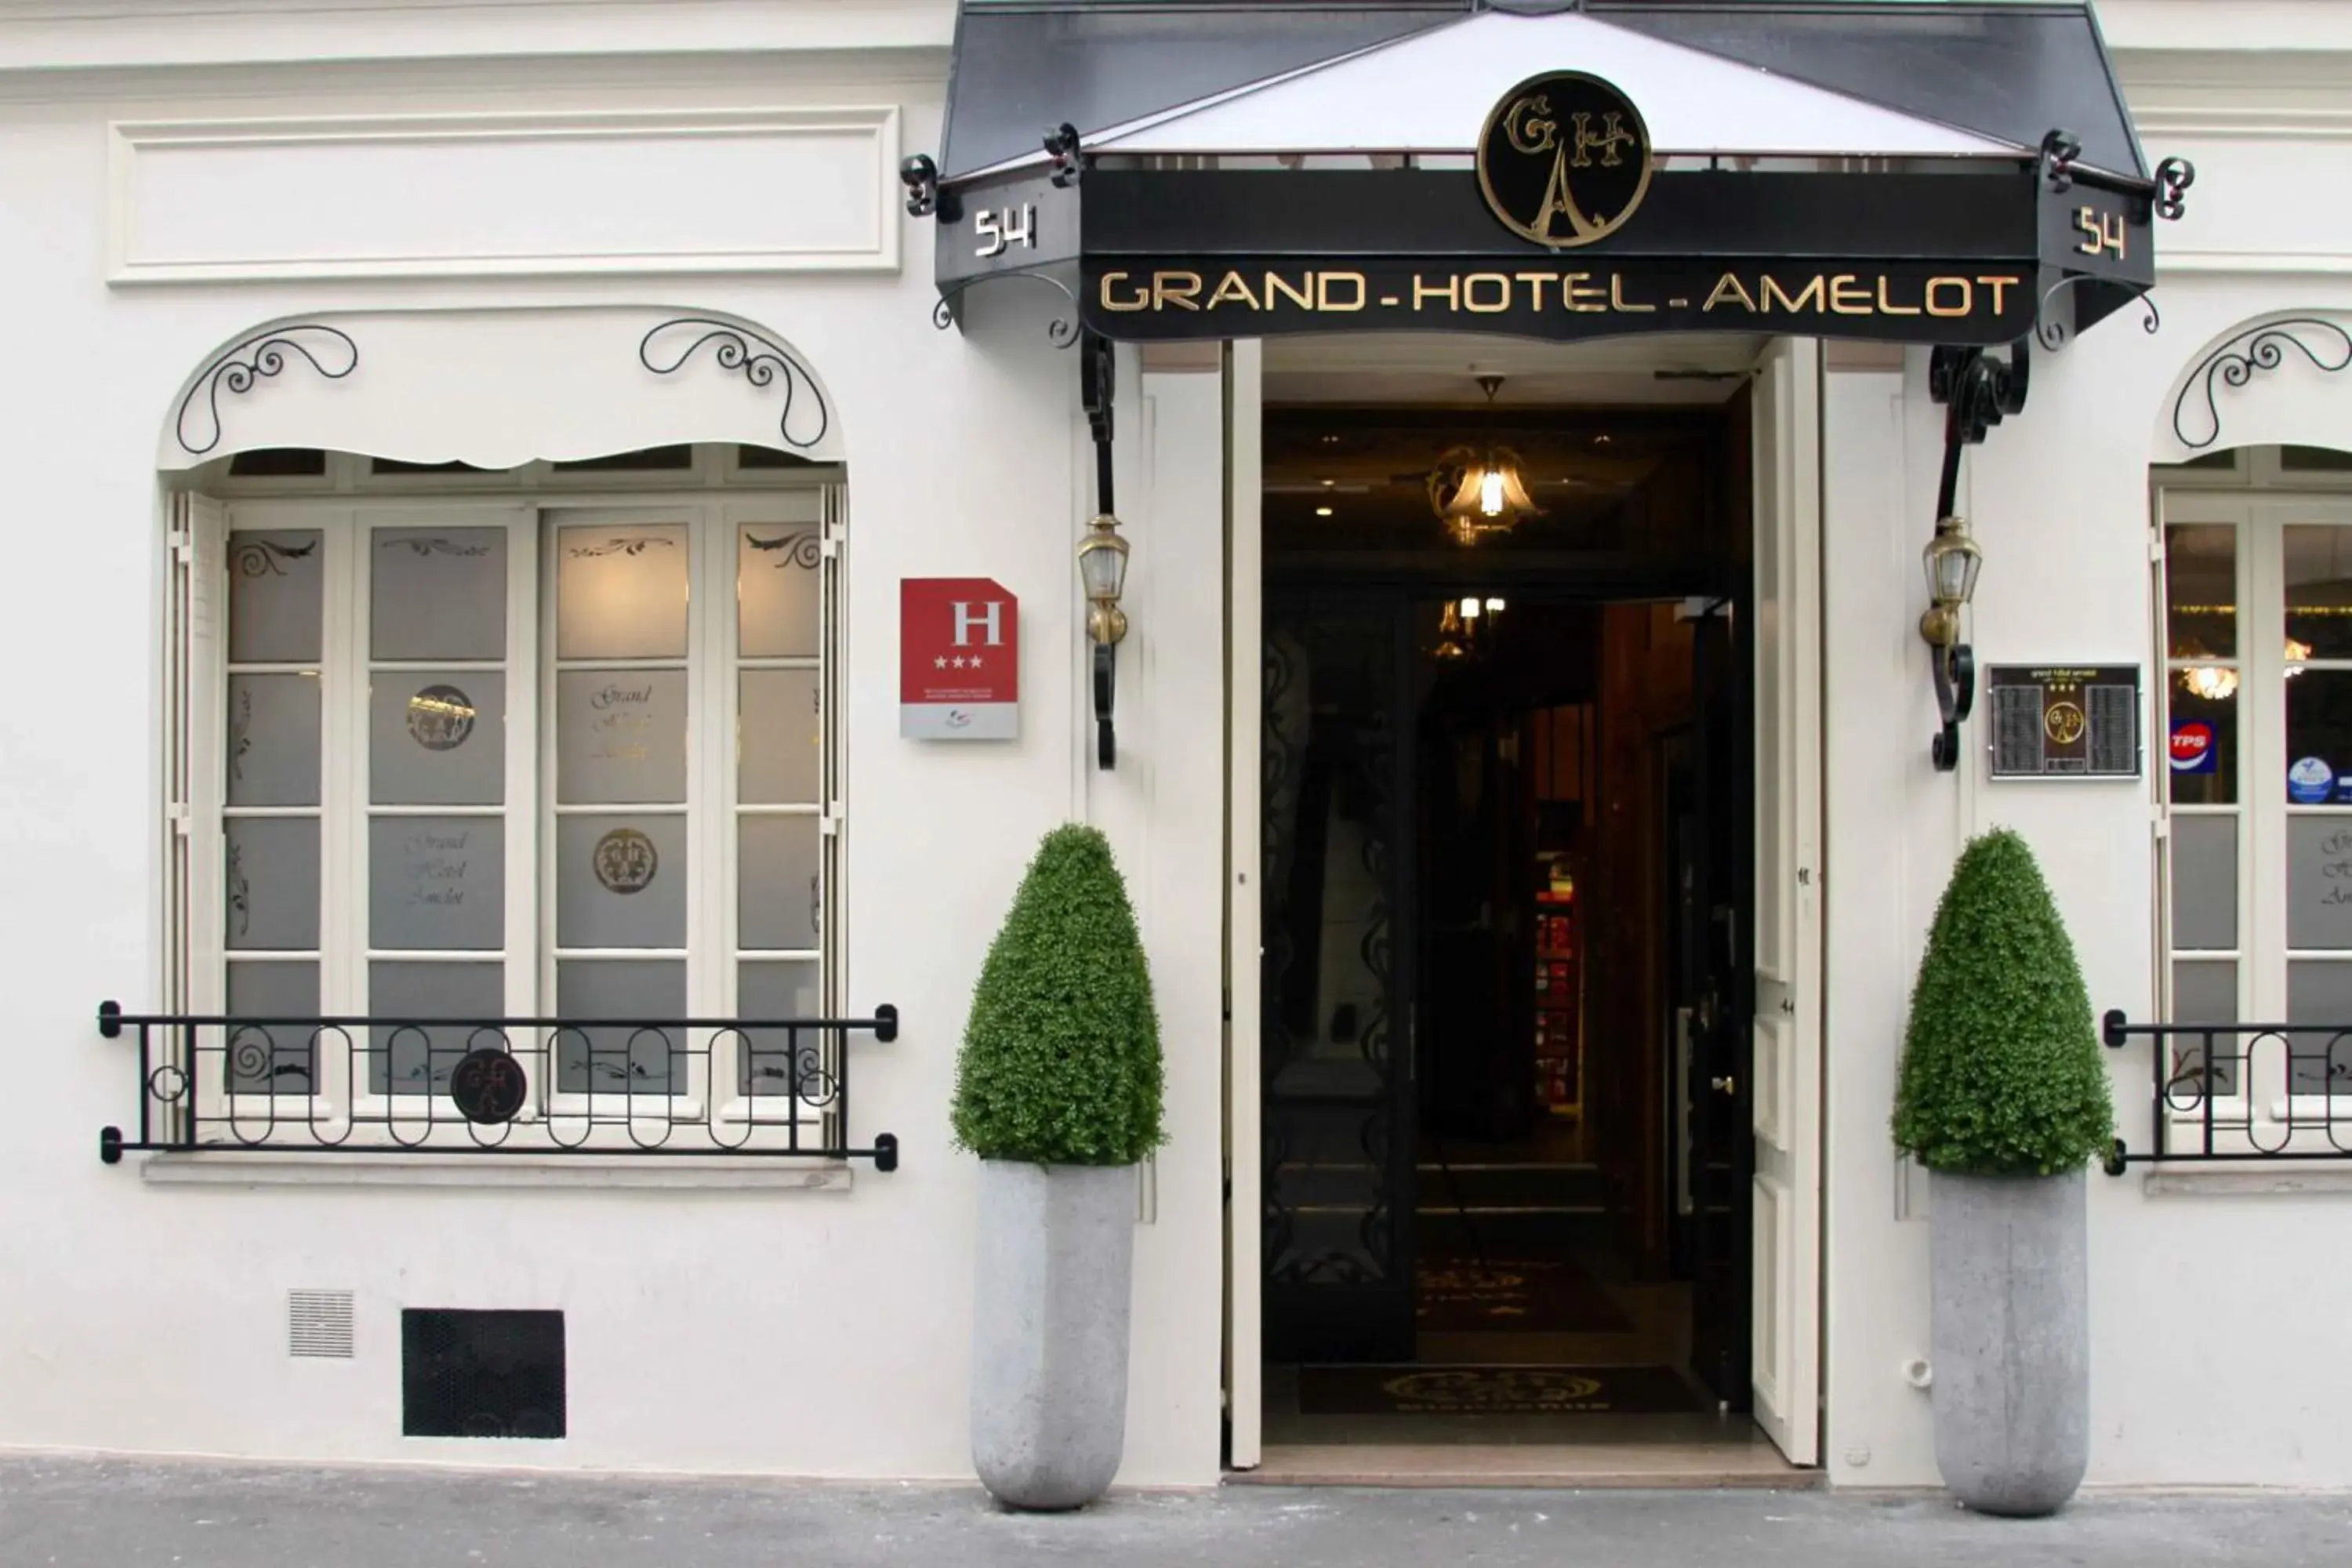 Facade/entrance in Grand Hôtel Amelot